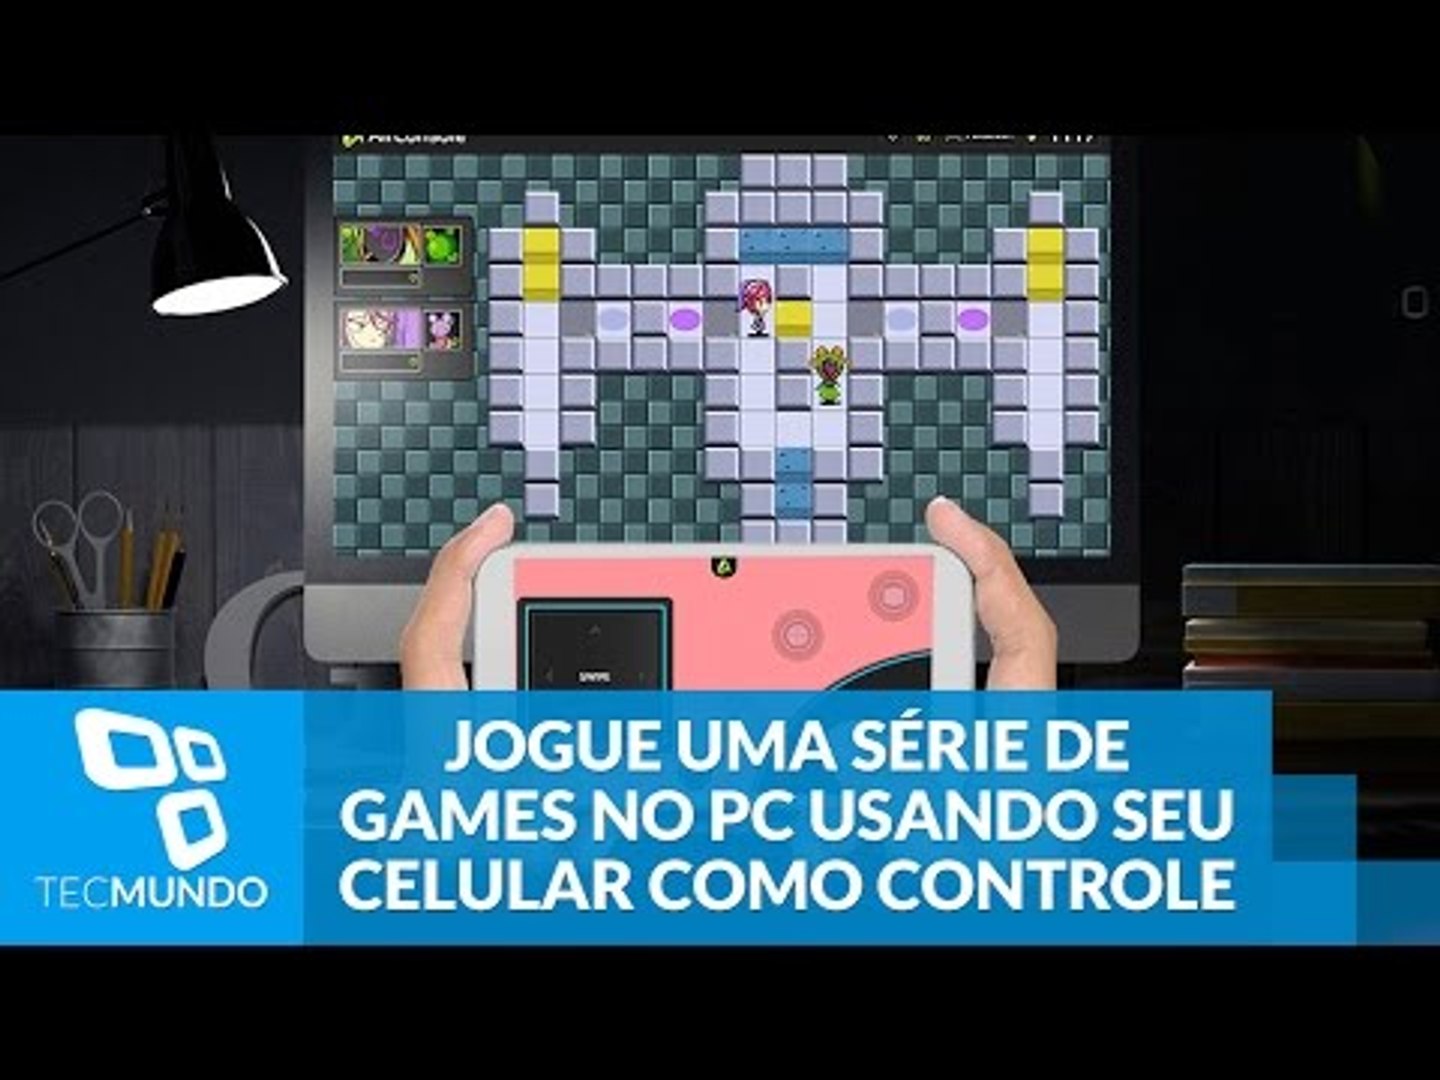 TecMundo Games